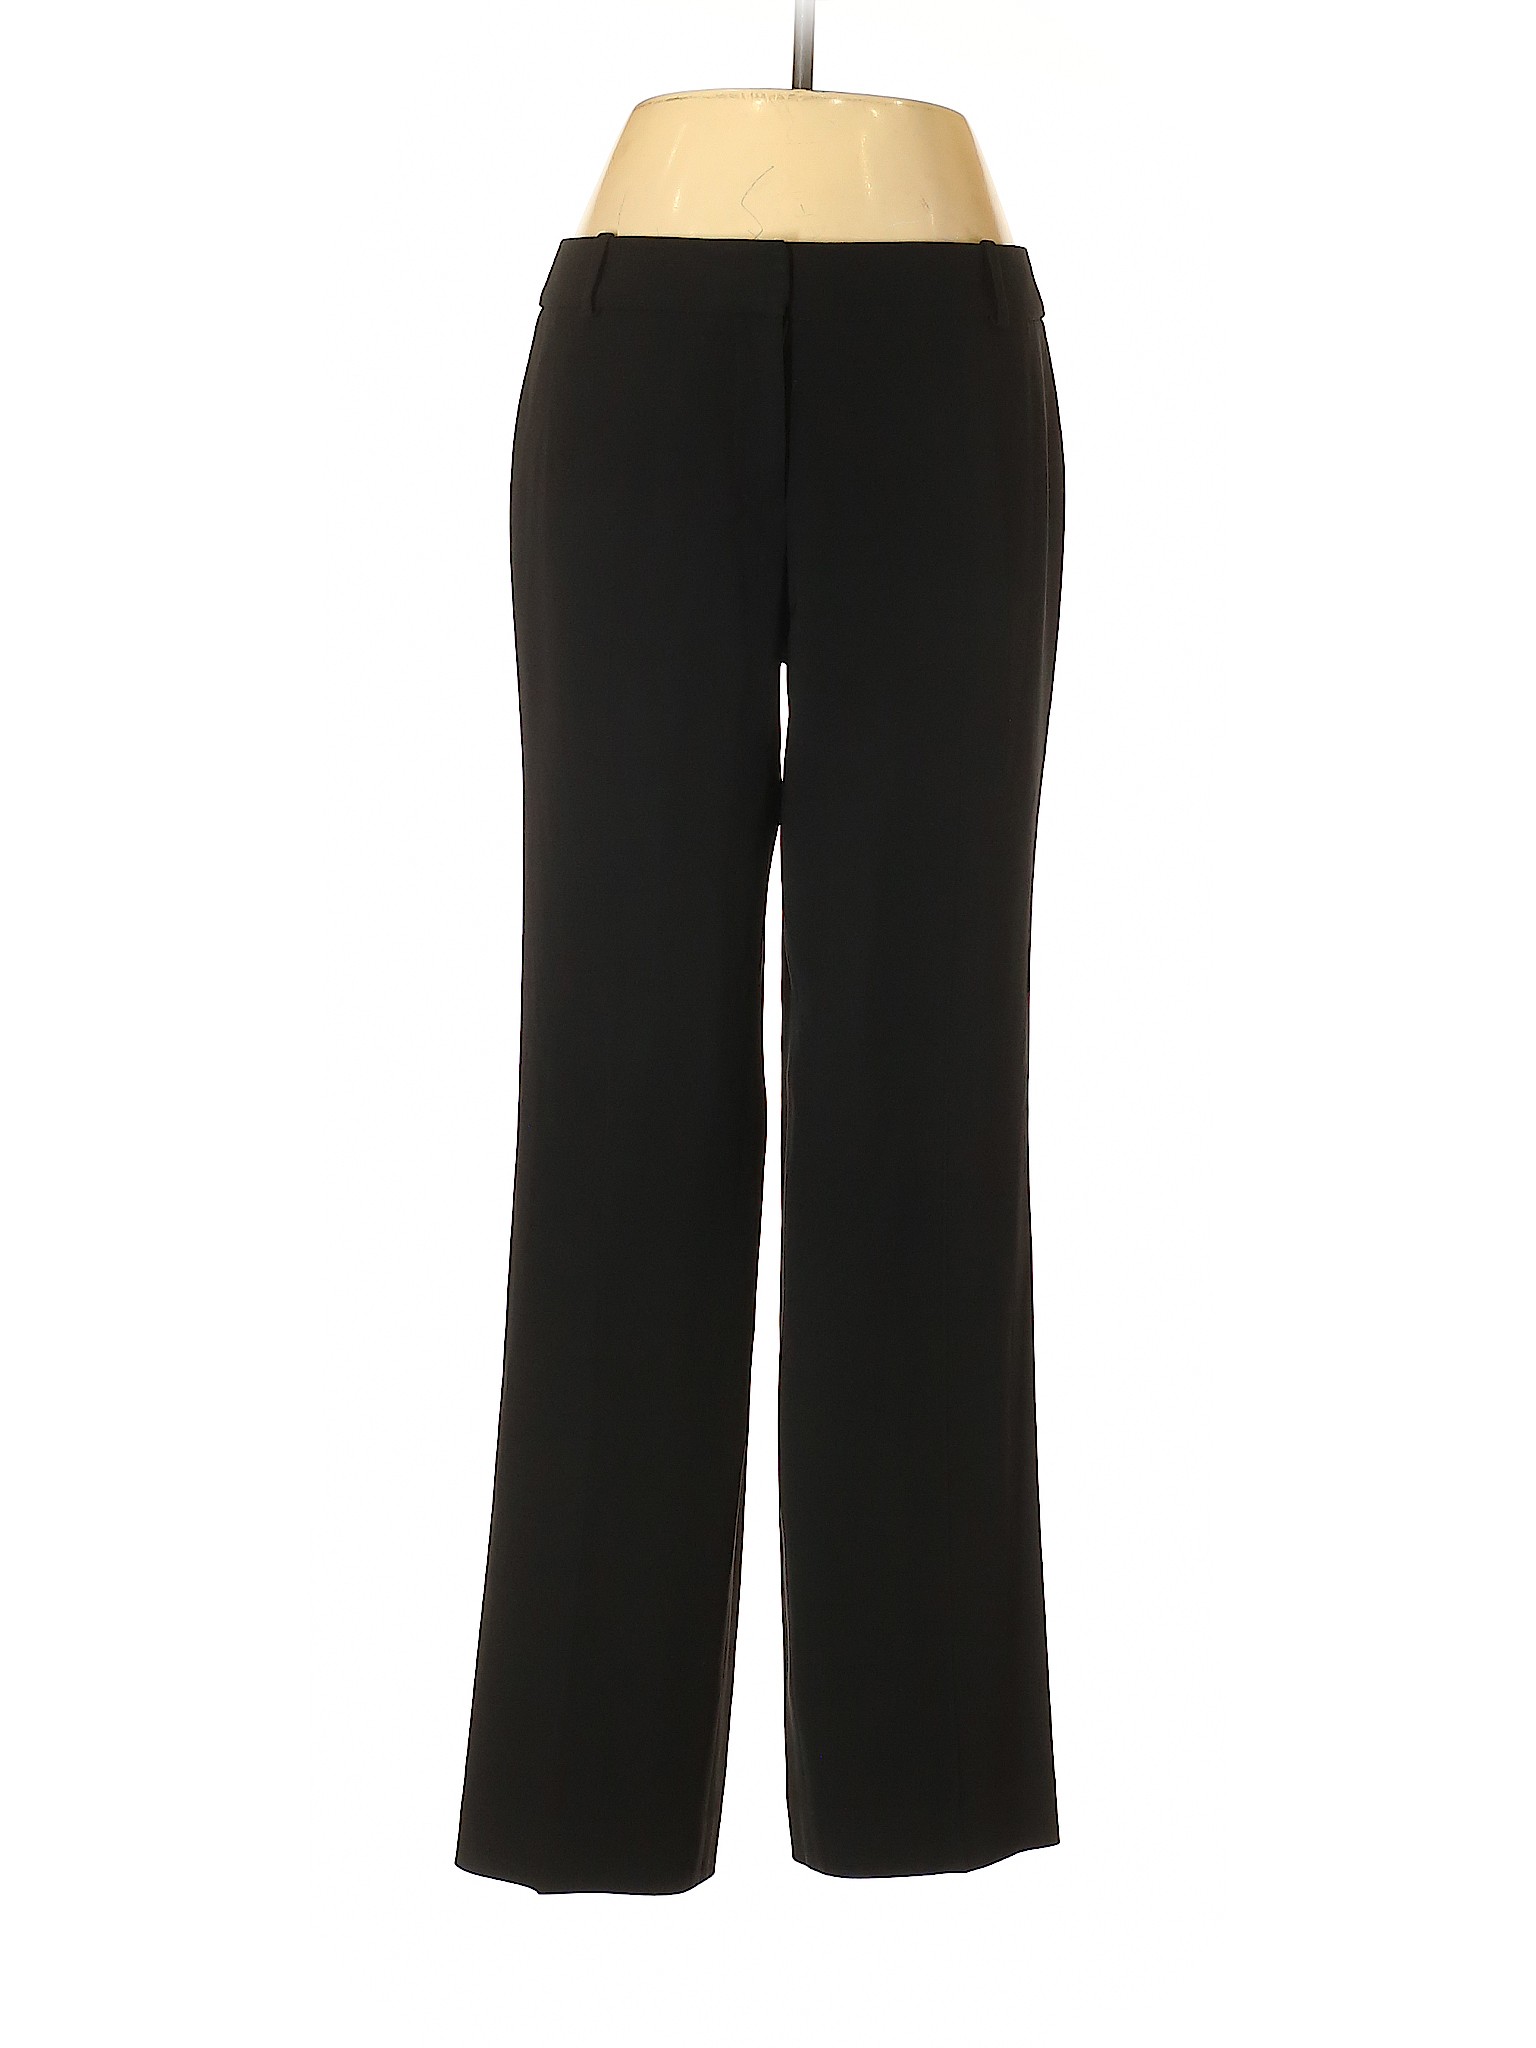 Ann Taylor Women Black Wool Pants 6 Petites | eBay